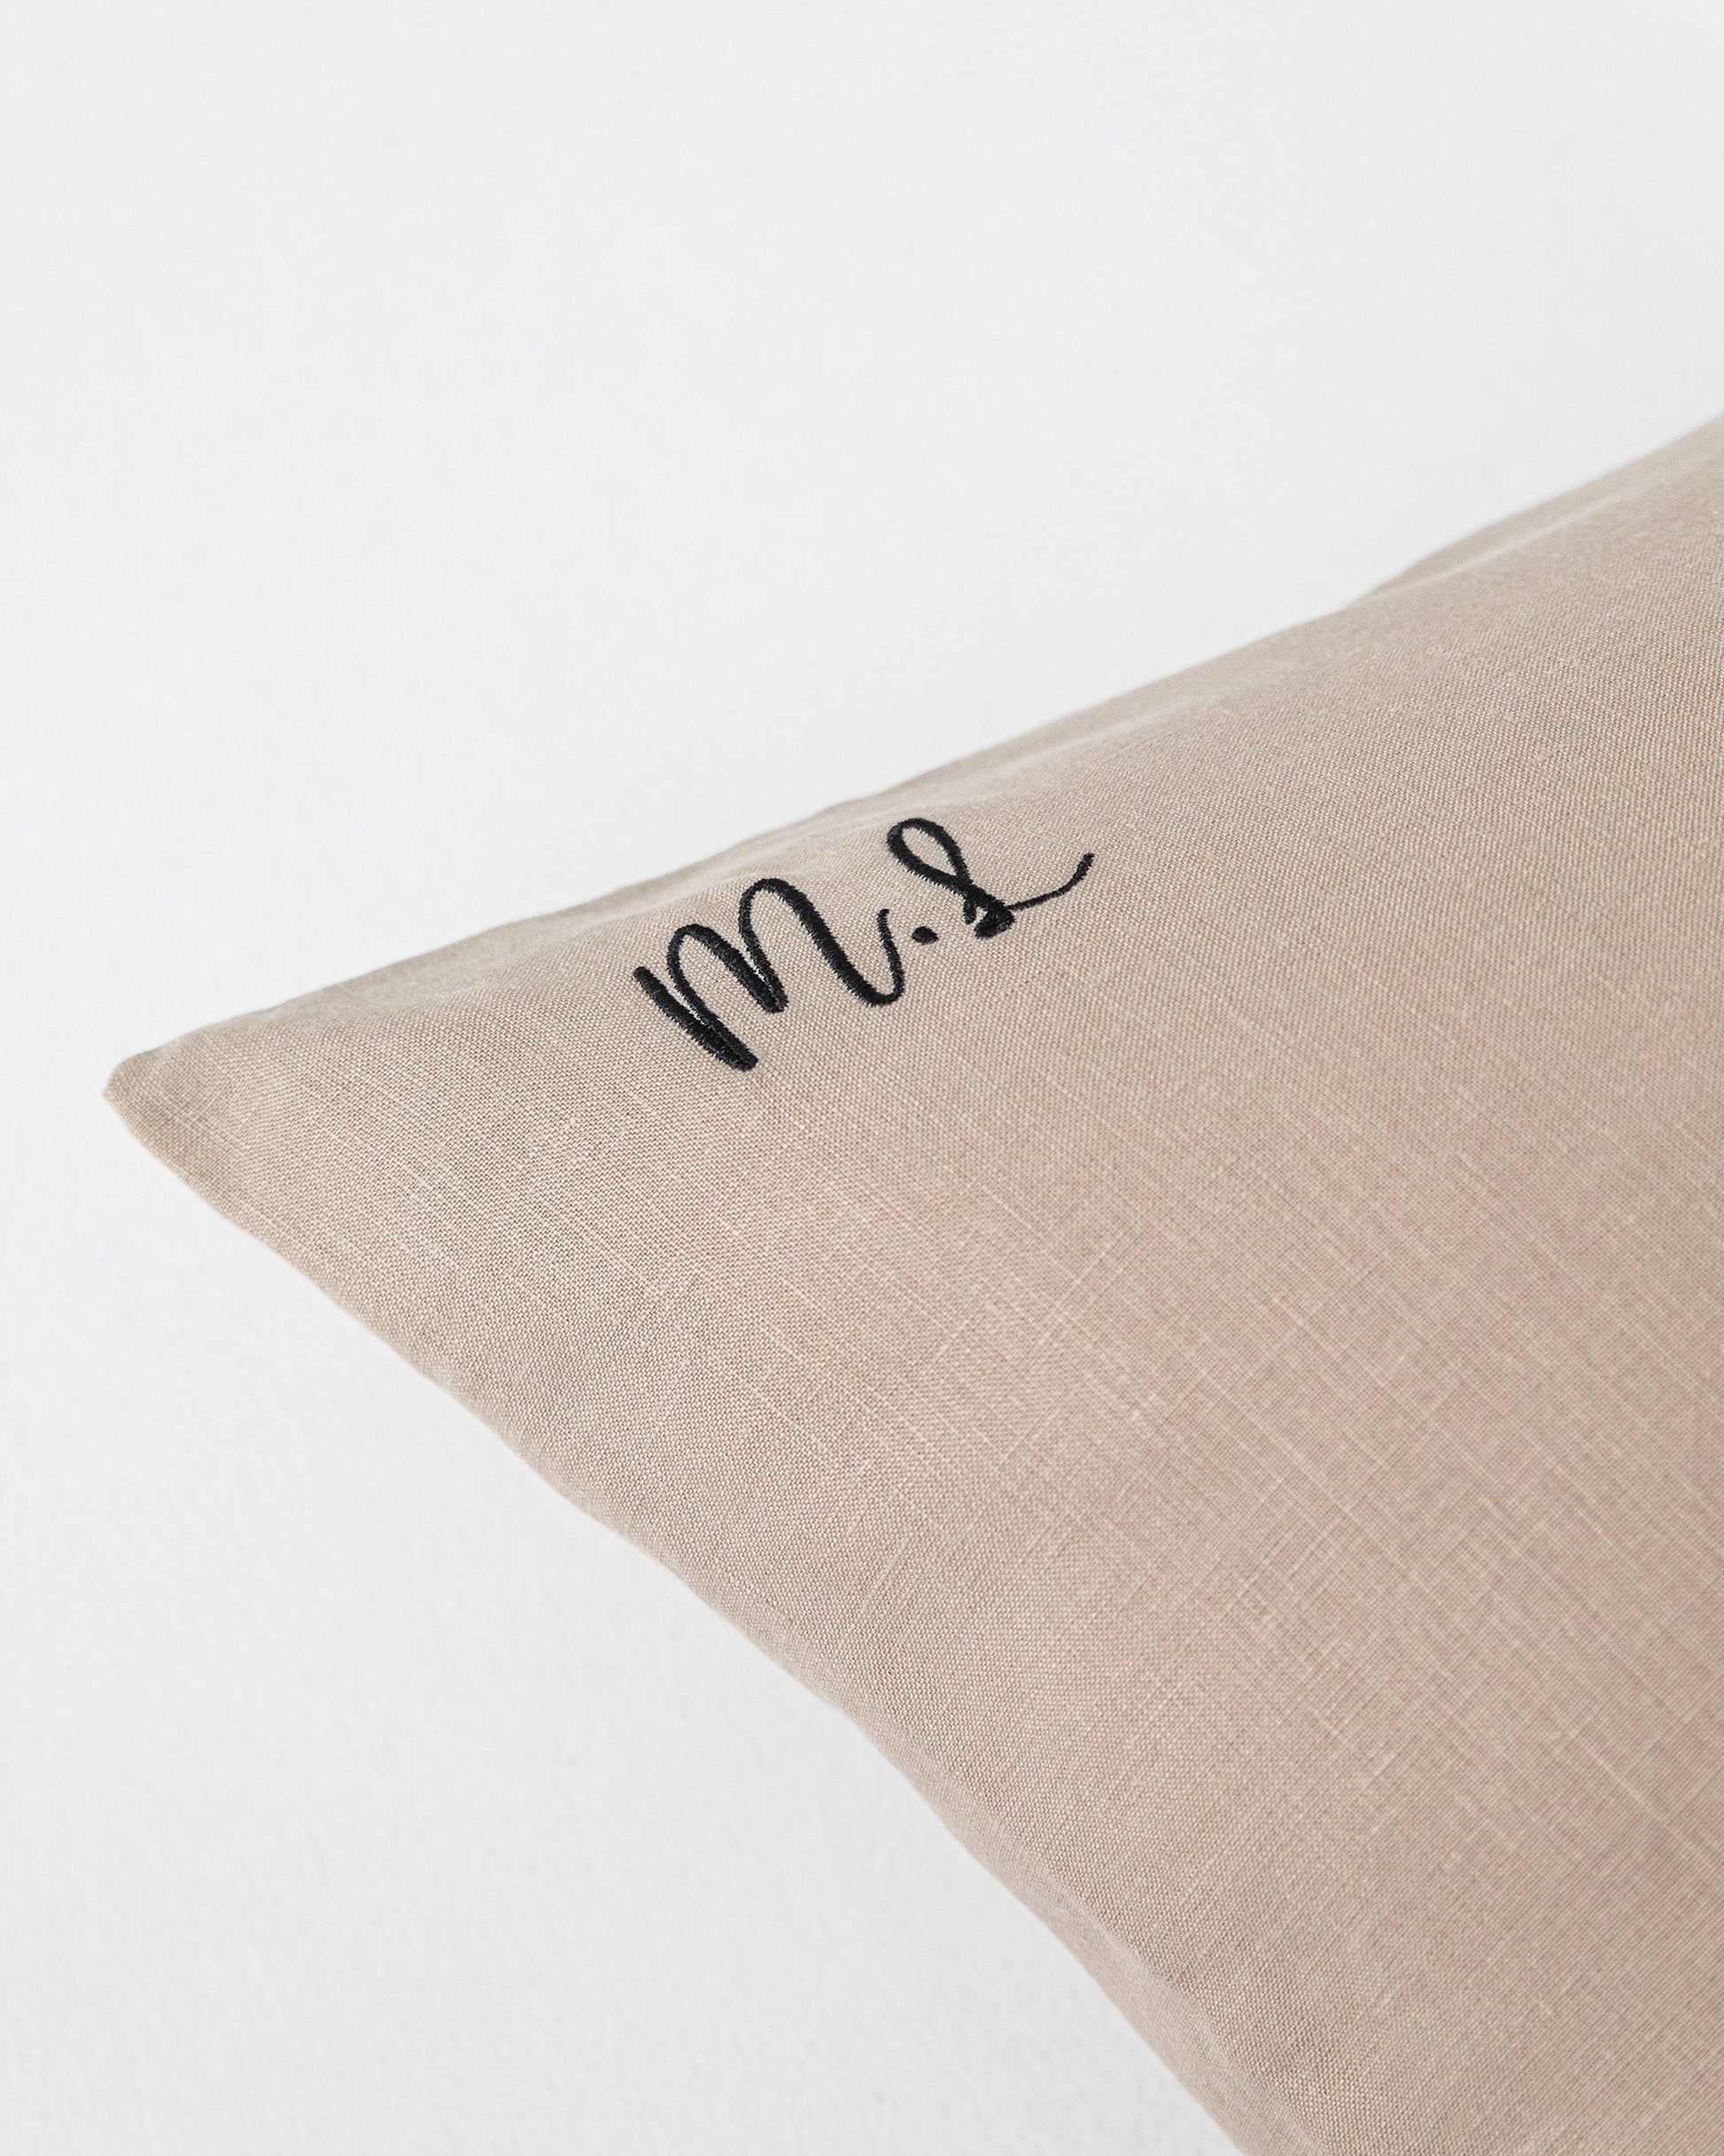 Moss yellow linen pillowcase - MagicLinen